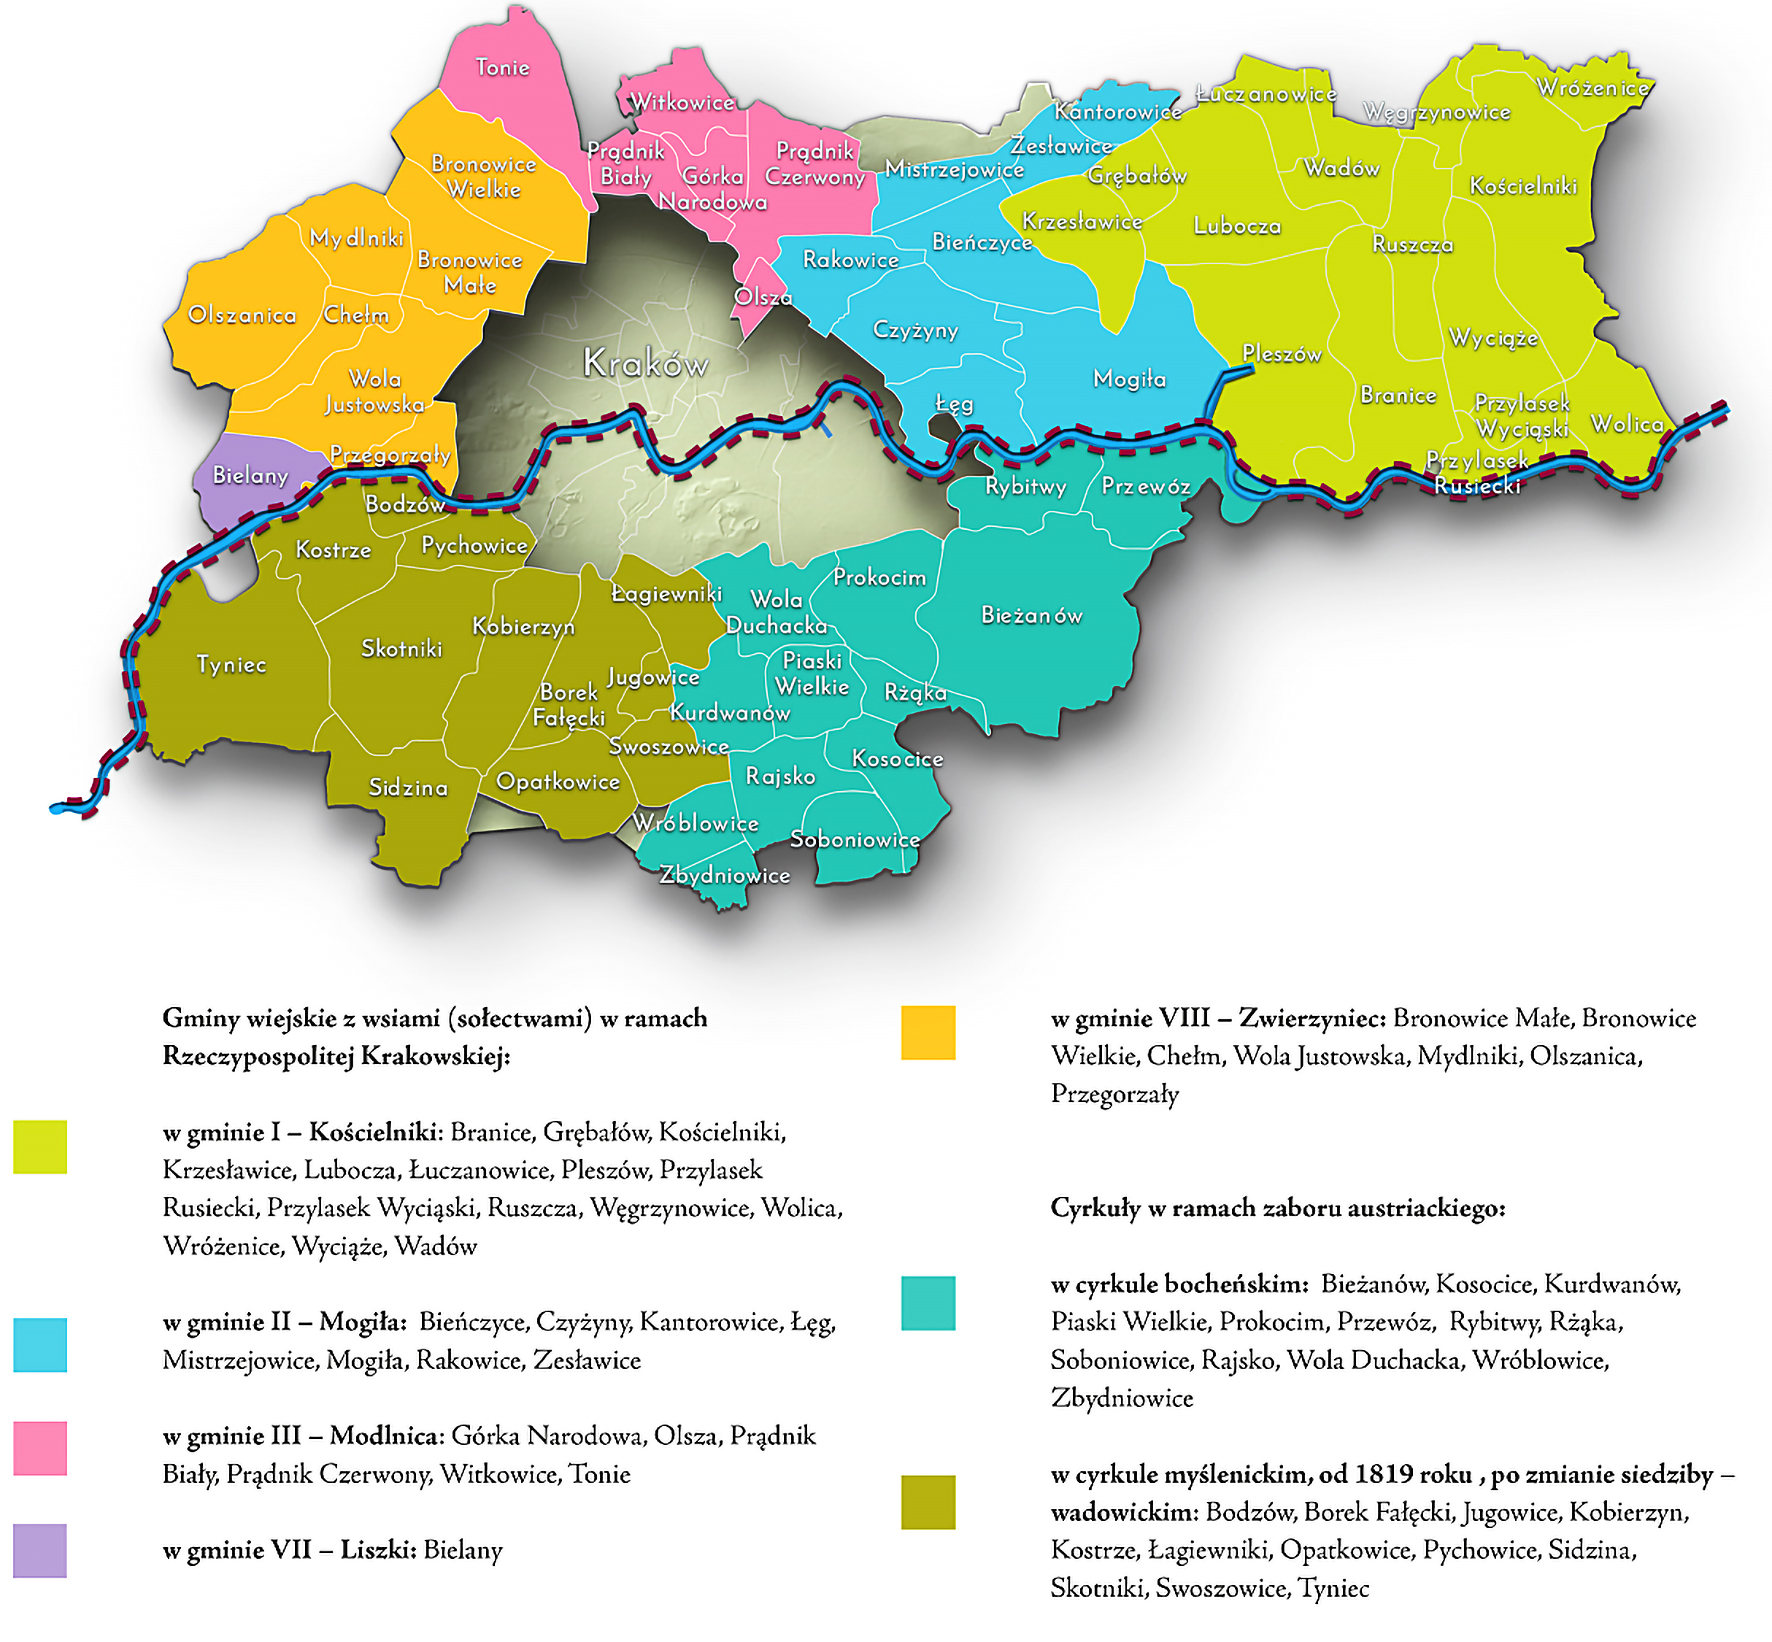 Mapa 45. Miejscowości włączone do Krakowa po 1915 roku według przynależności do gmin wiejskich w Rzeczypospolitej Krakowskiej oraz cyrkułów w zaborze austriackim (w latach 1815-1837).